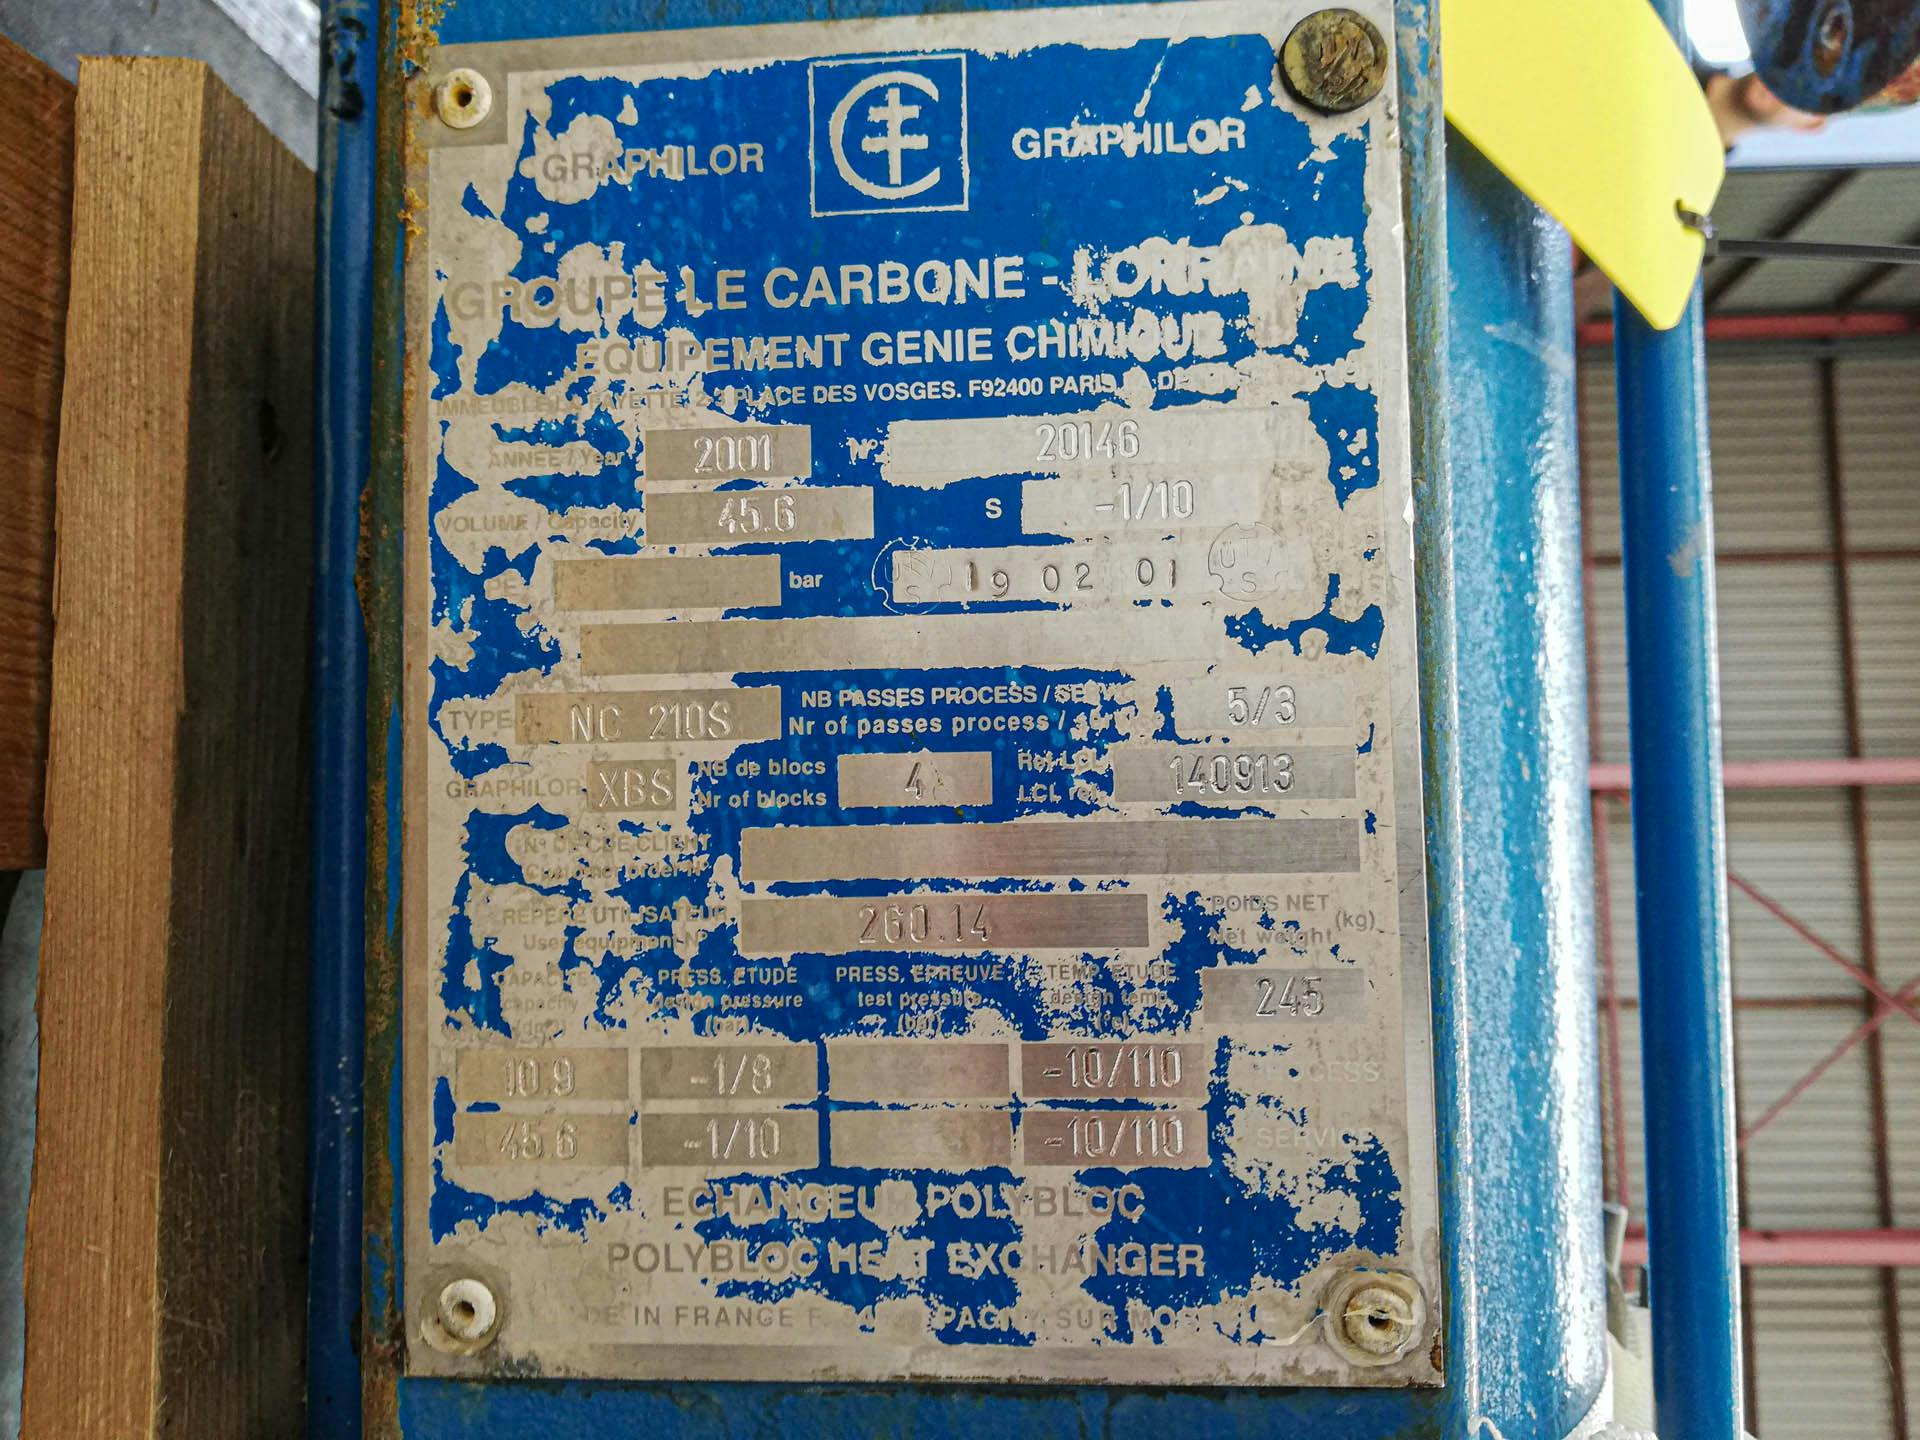 Le Carbone-Lorraine NC210S - Échangeur de température tubulaire - image 5